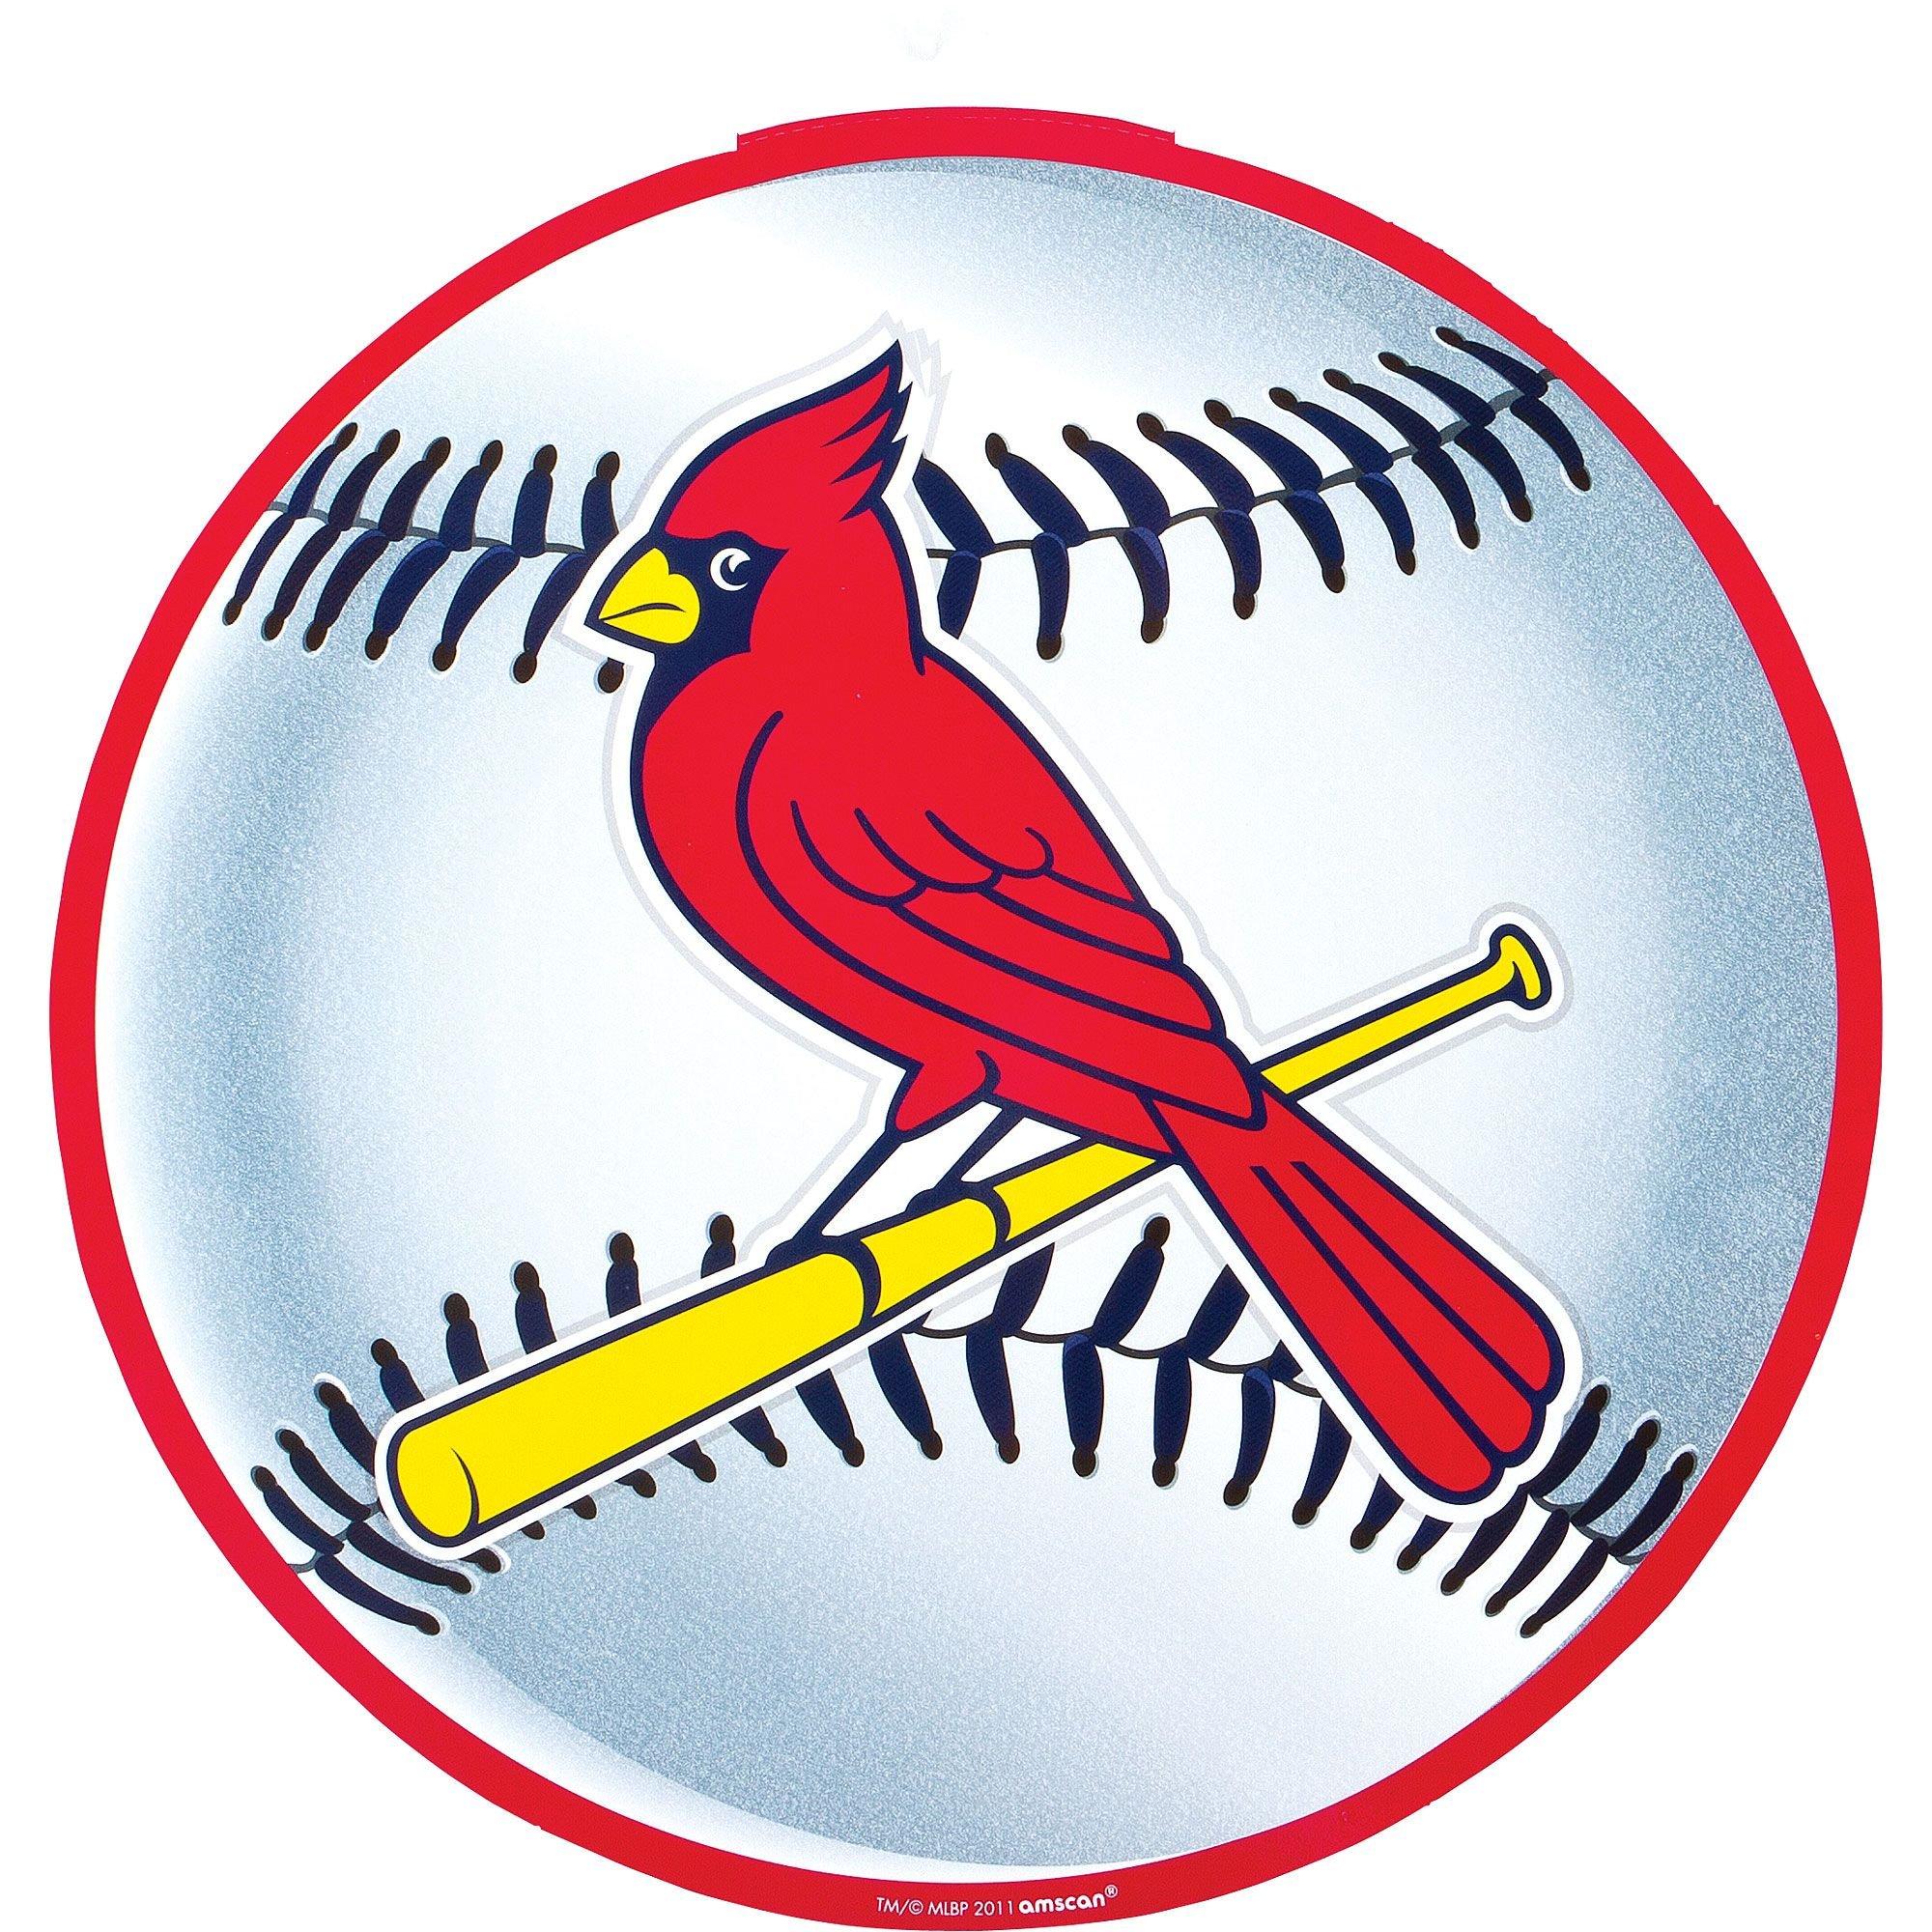 Cardinals  Cardinals, Stl cardinals baseball, Stl cardinals